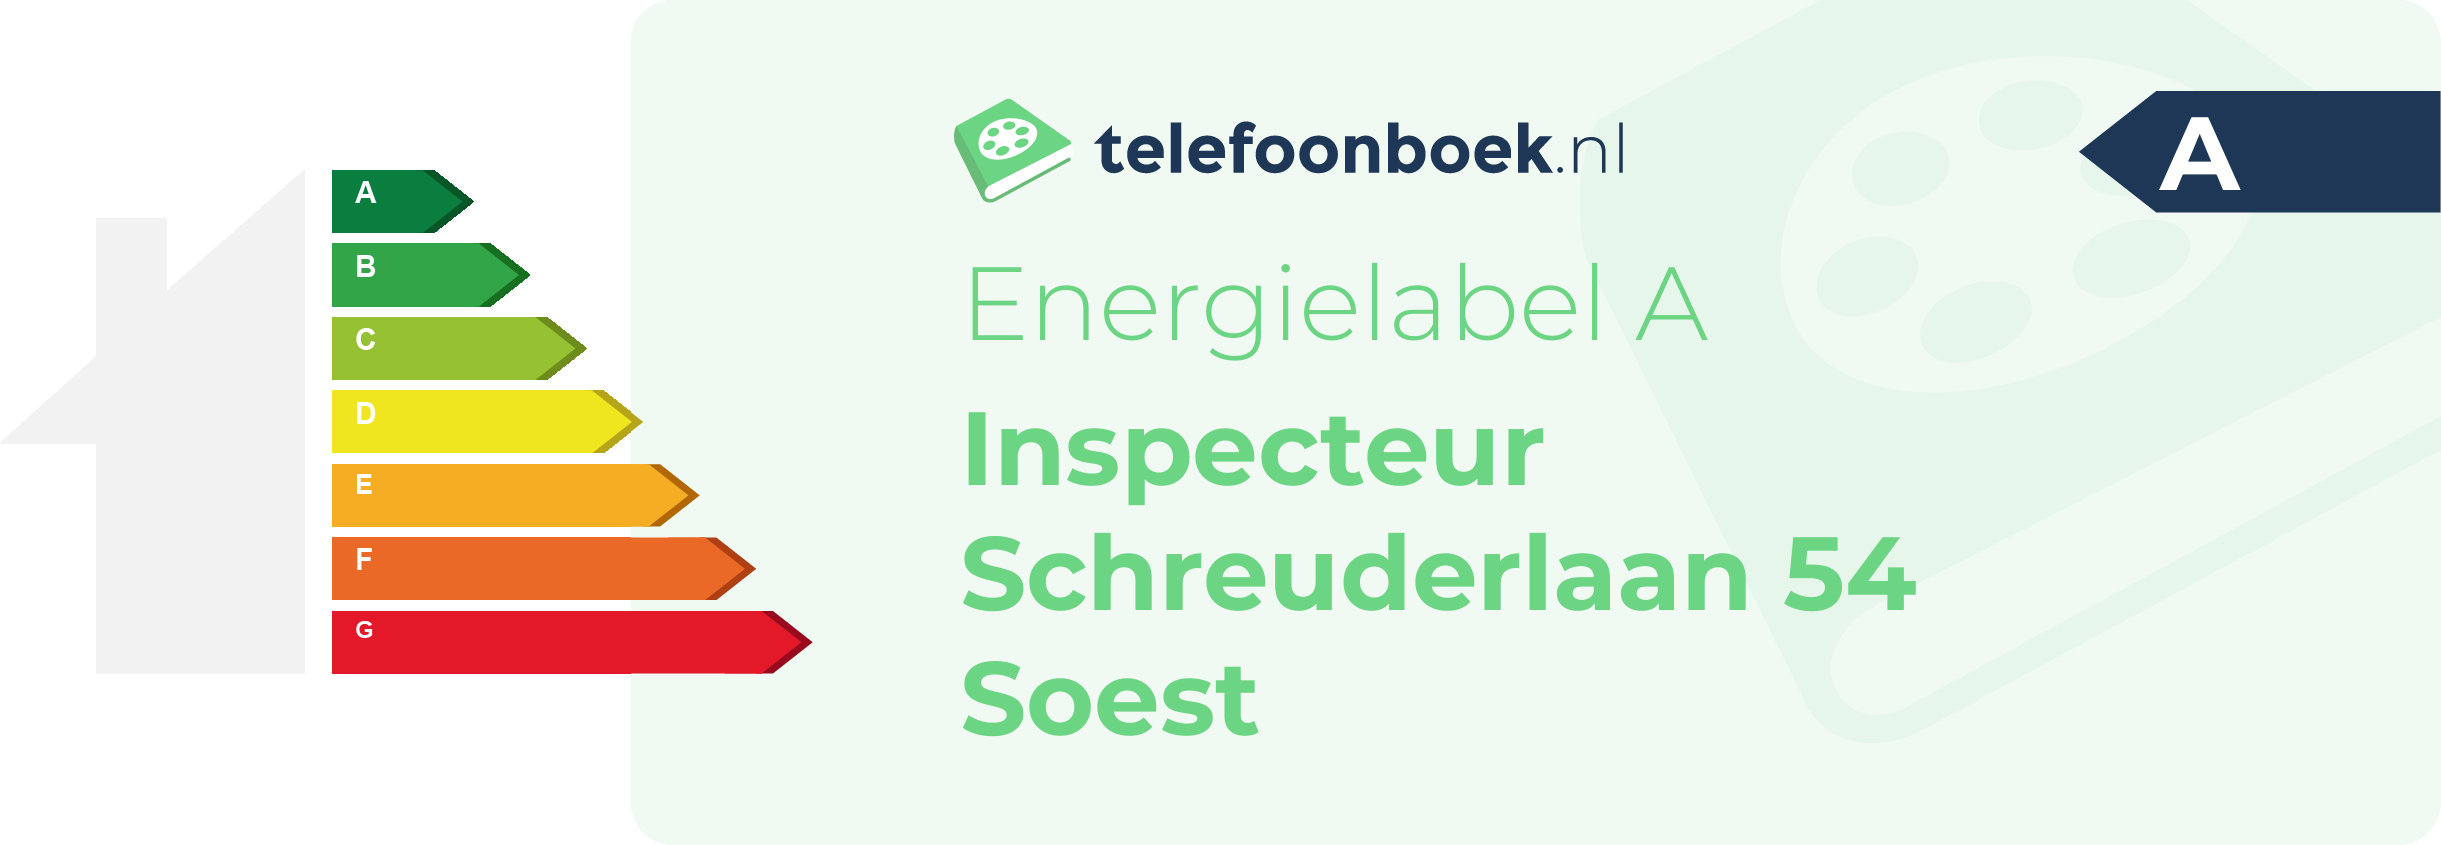 Energielabel Inspecteur Schreuderlaan 54 Soest